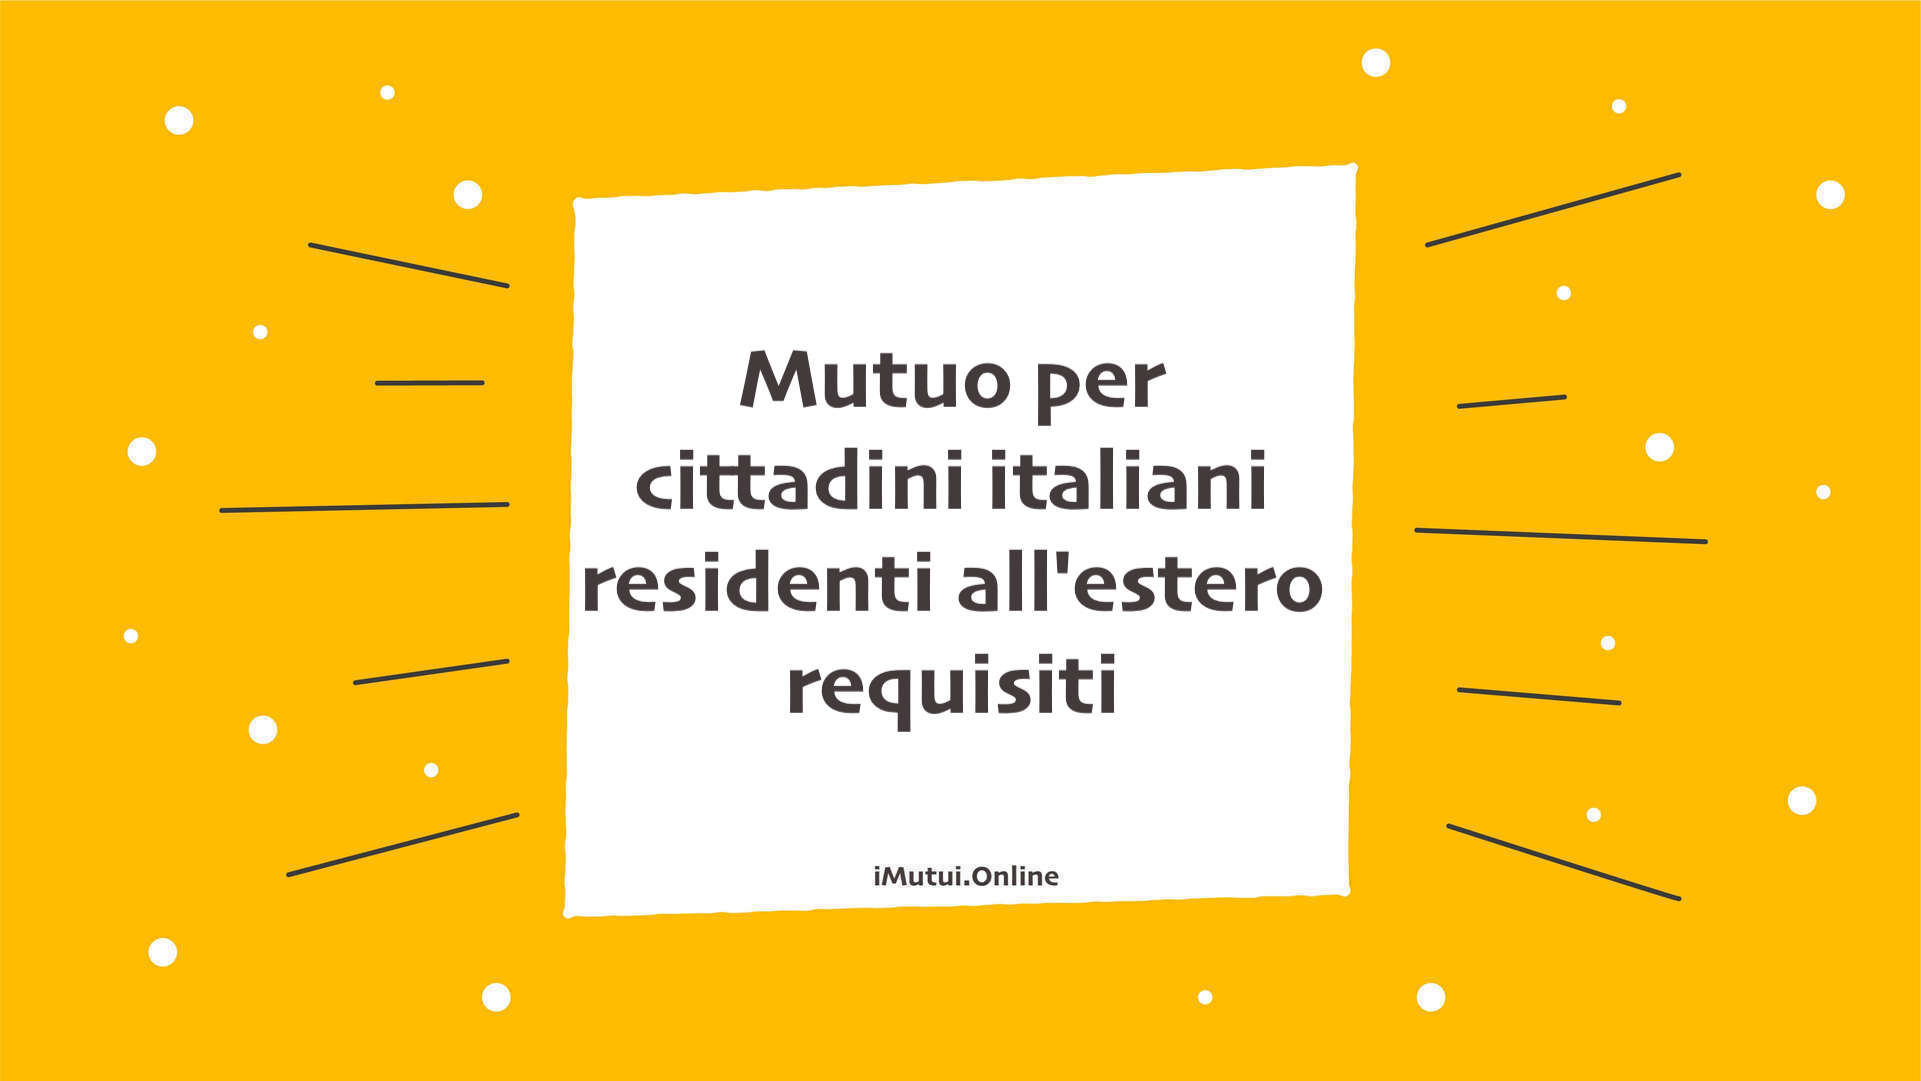 Mutuo per cittadini italiani residenti all'estero requisiti